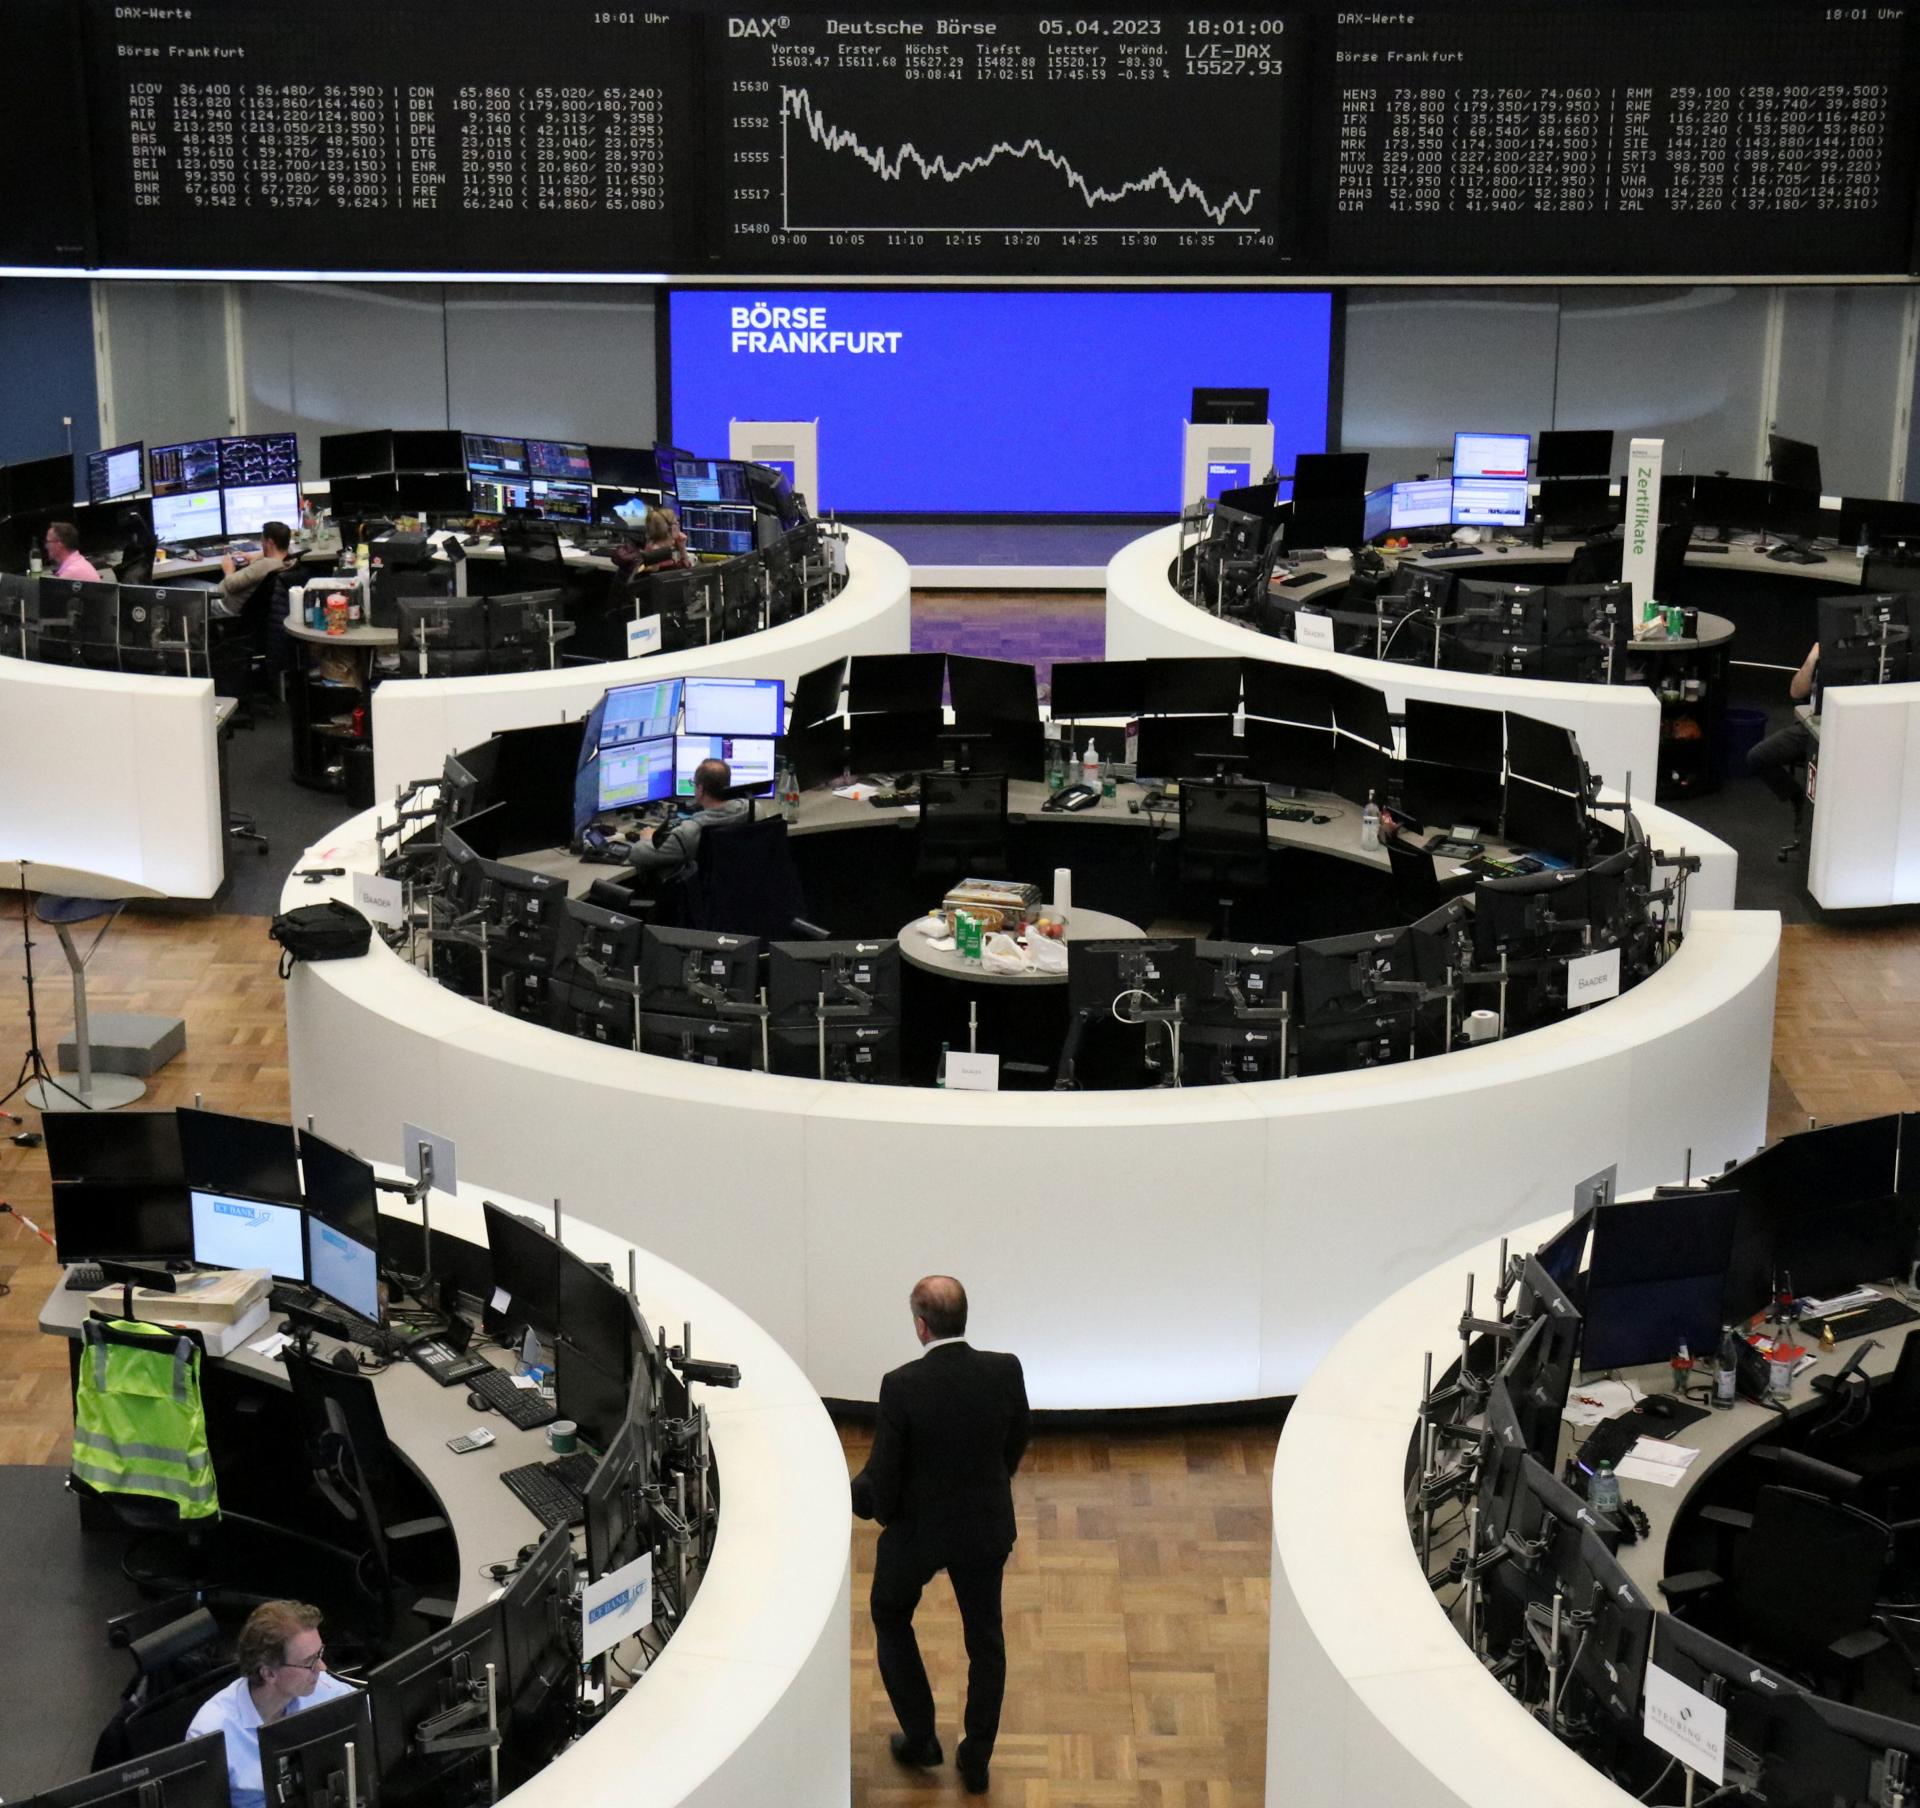 Les bourses européennes poursuivent leur progression, l’indice français CAC 40 atteint un nouveau record